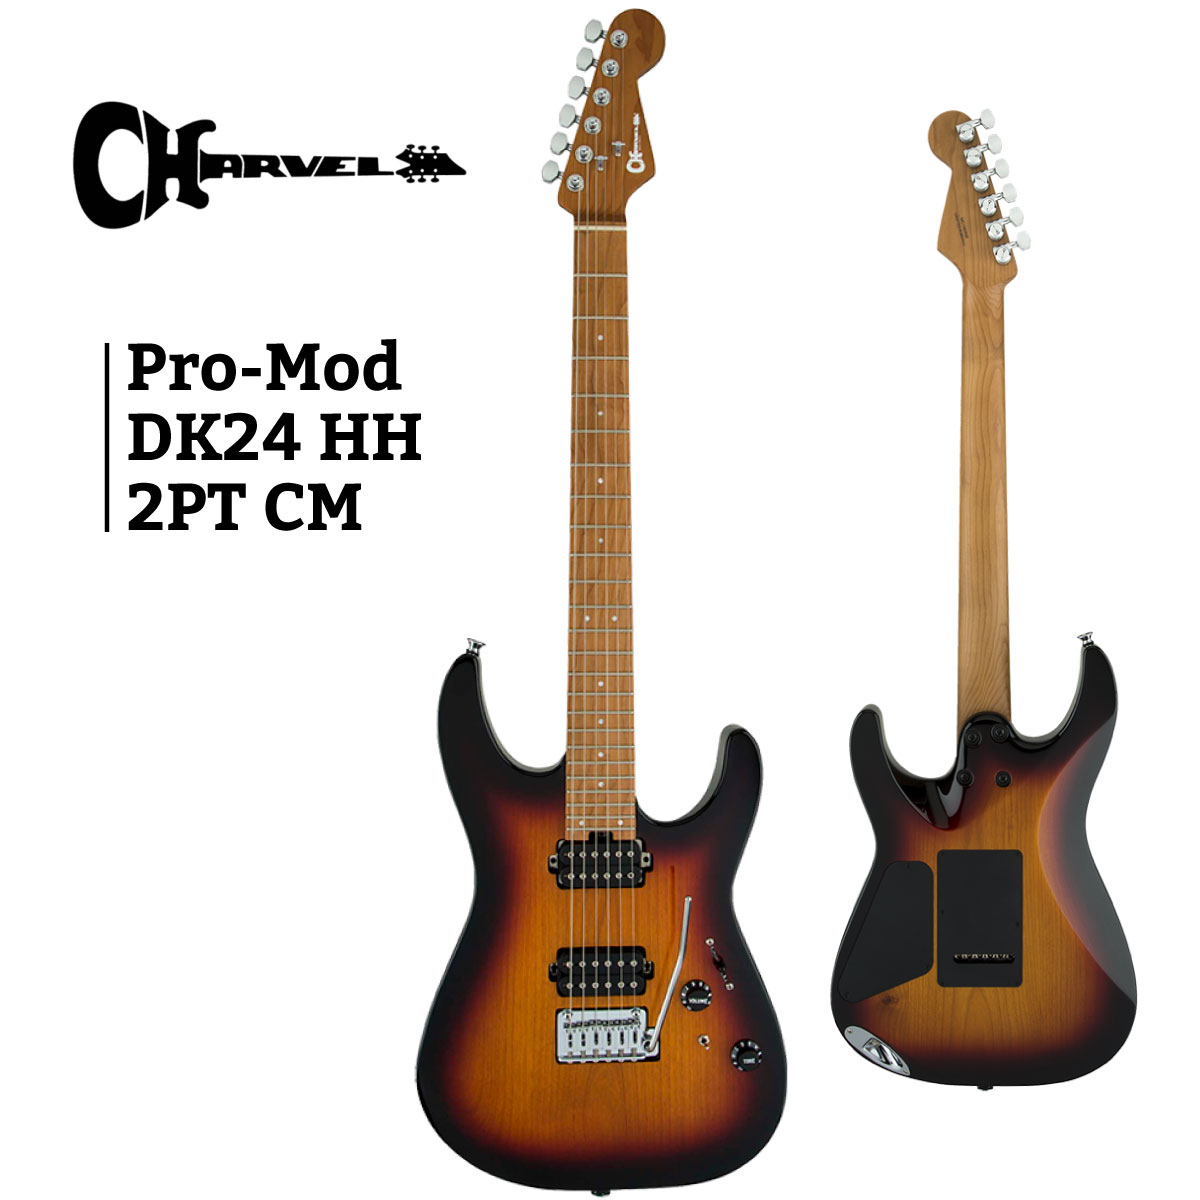 次回入荷分 予約受付中 Charvel オープニング大放出セール Pro-Mod Dinky DK24 HH 2PT 激安ブランド CM -3-Tone Stratocaster 新品 サンバースト Sunburst- エレキギター ストラトキャスタータイプ シャーベル Guitar Electric